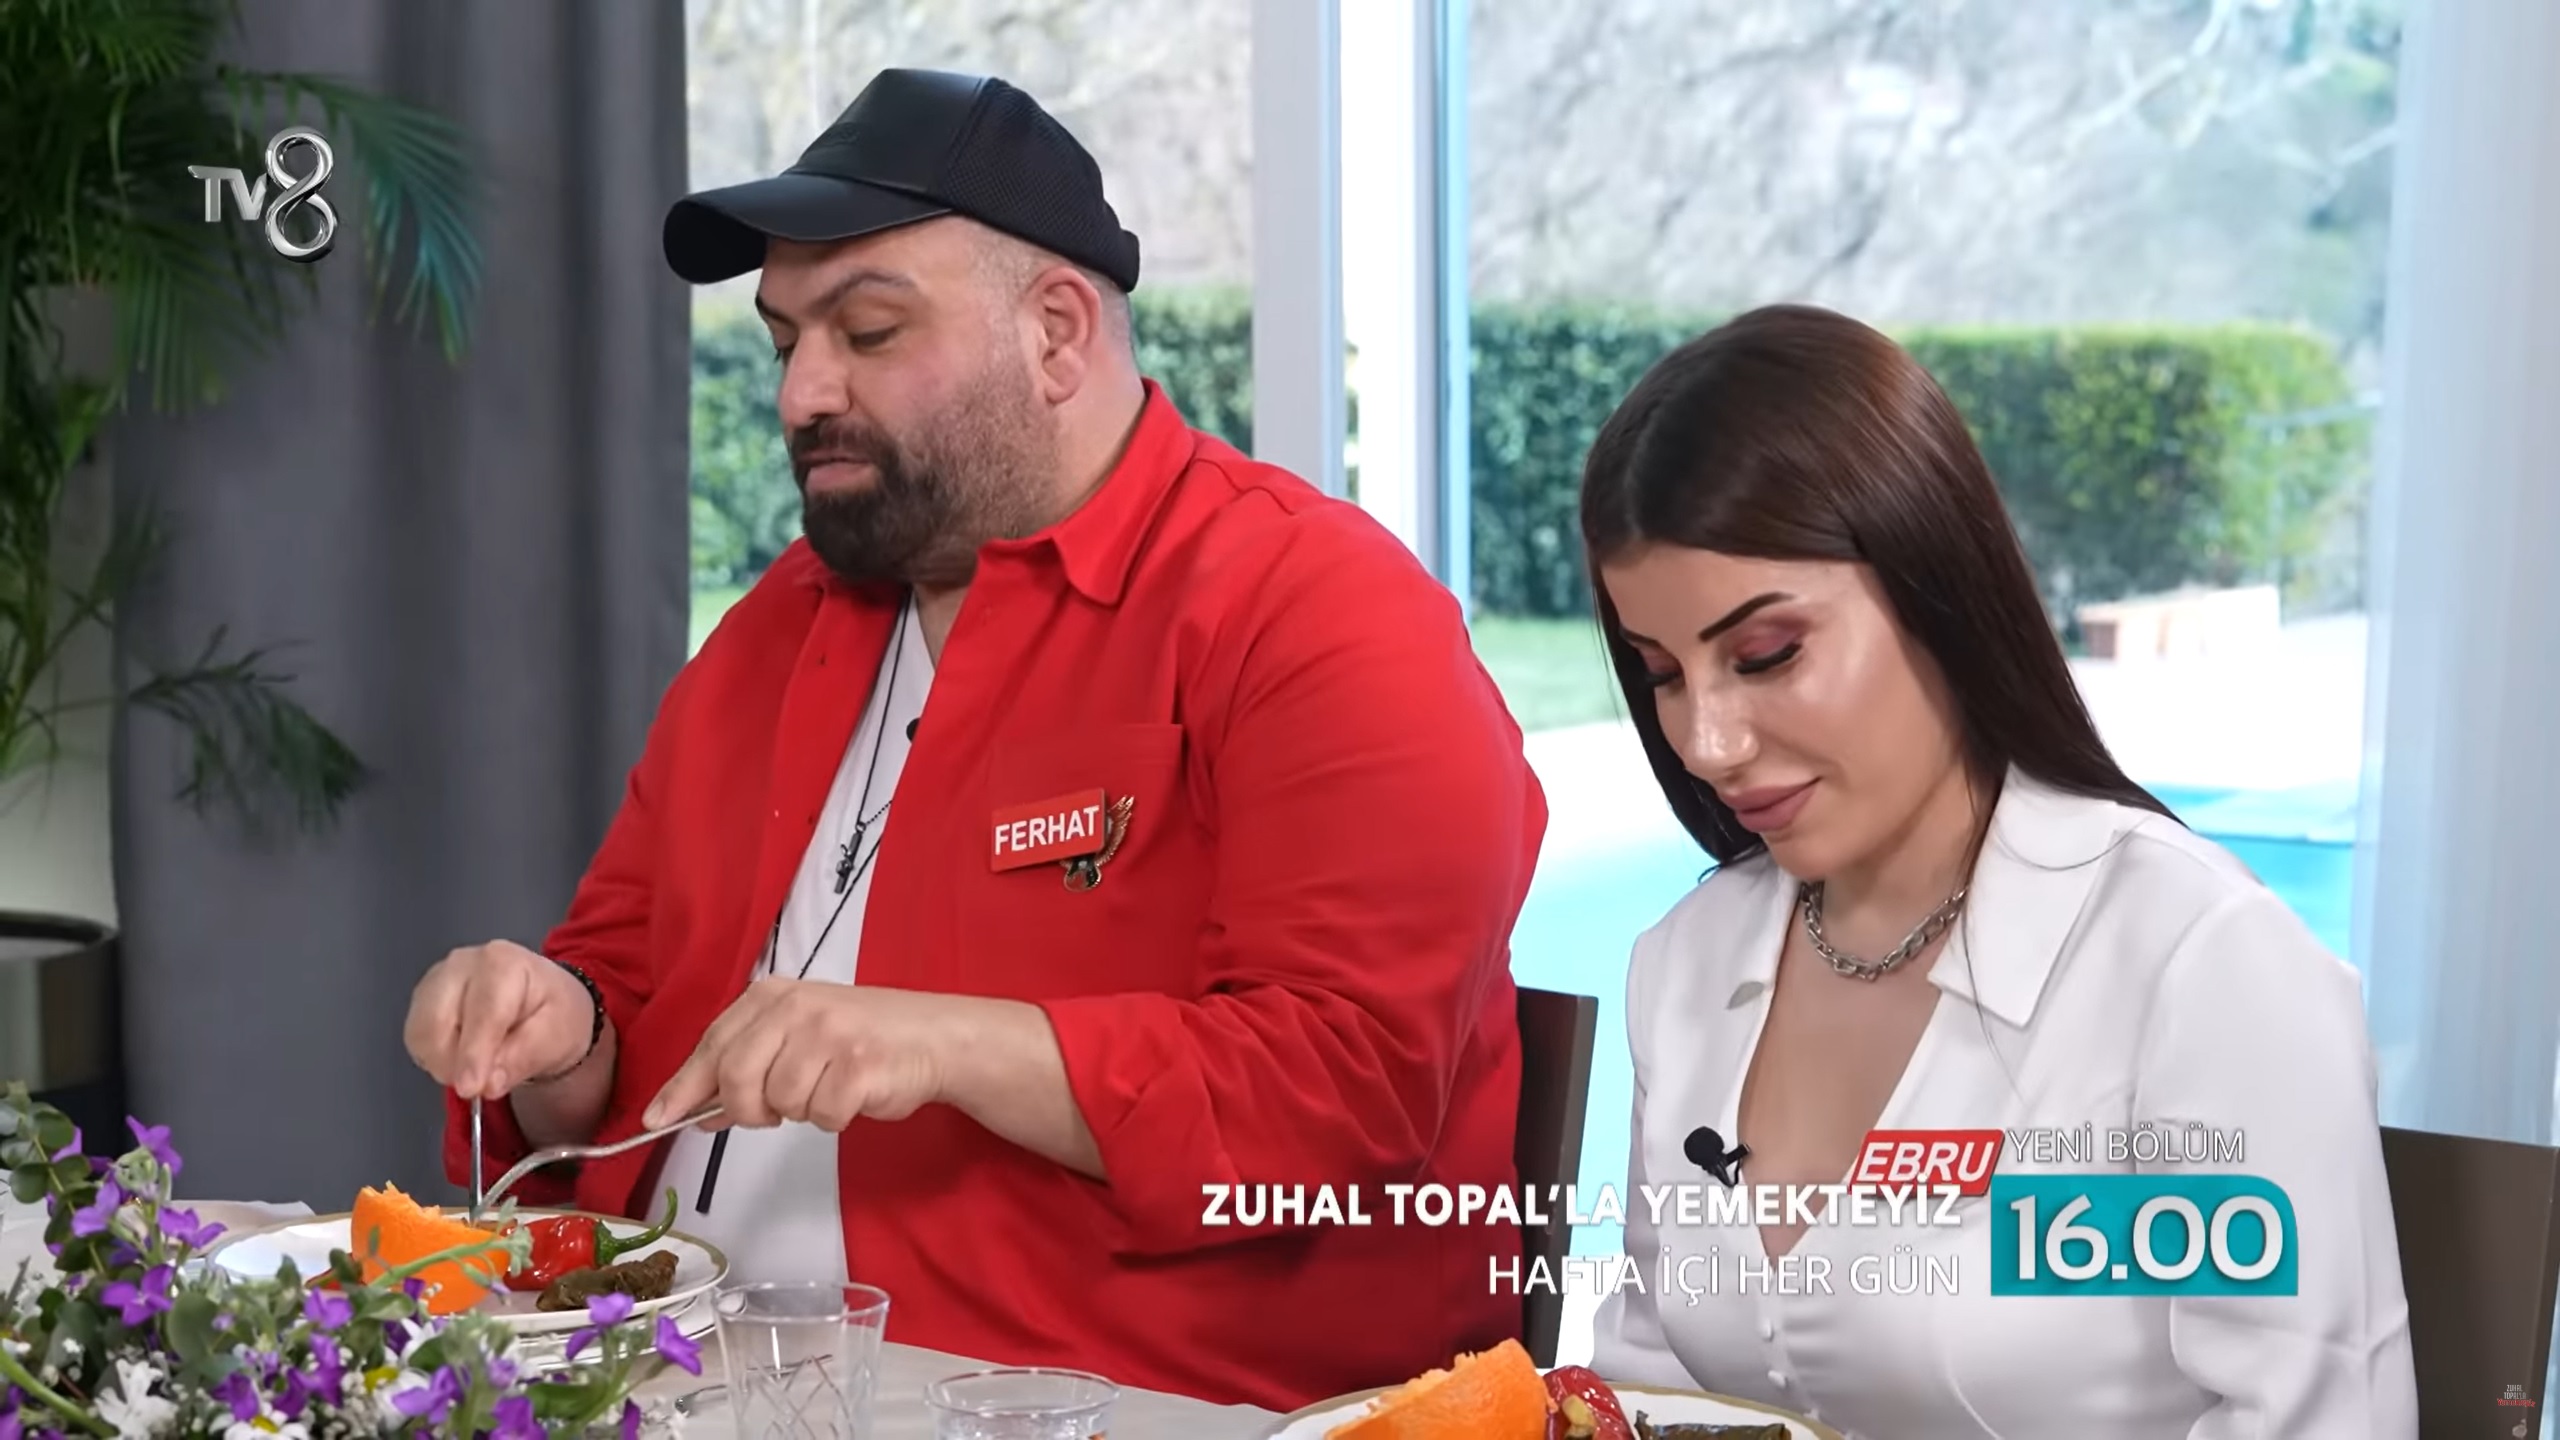 Zuhal Topal'la Yemekteyiz Ebru Kozan (1-5 Mayıs) kimdir?